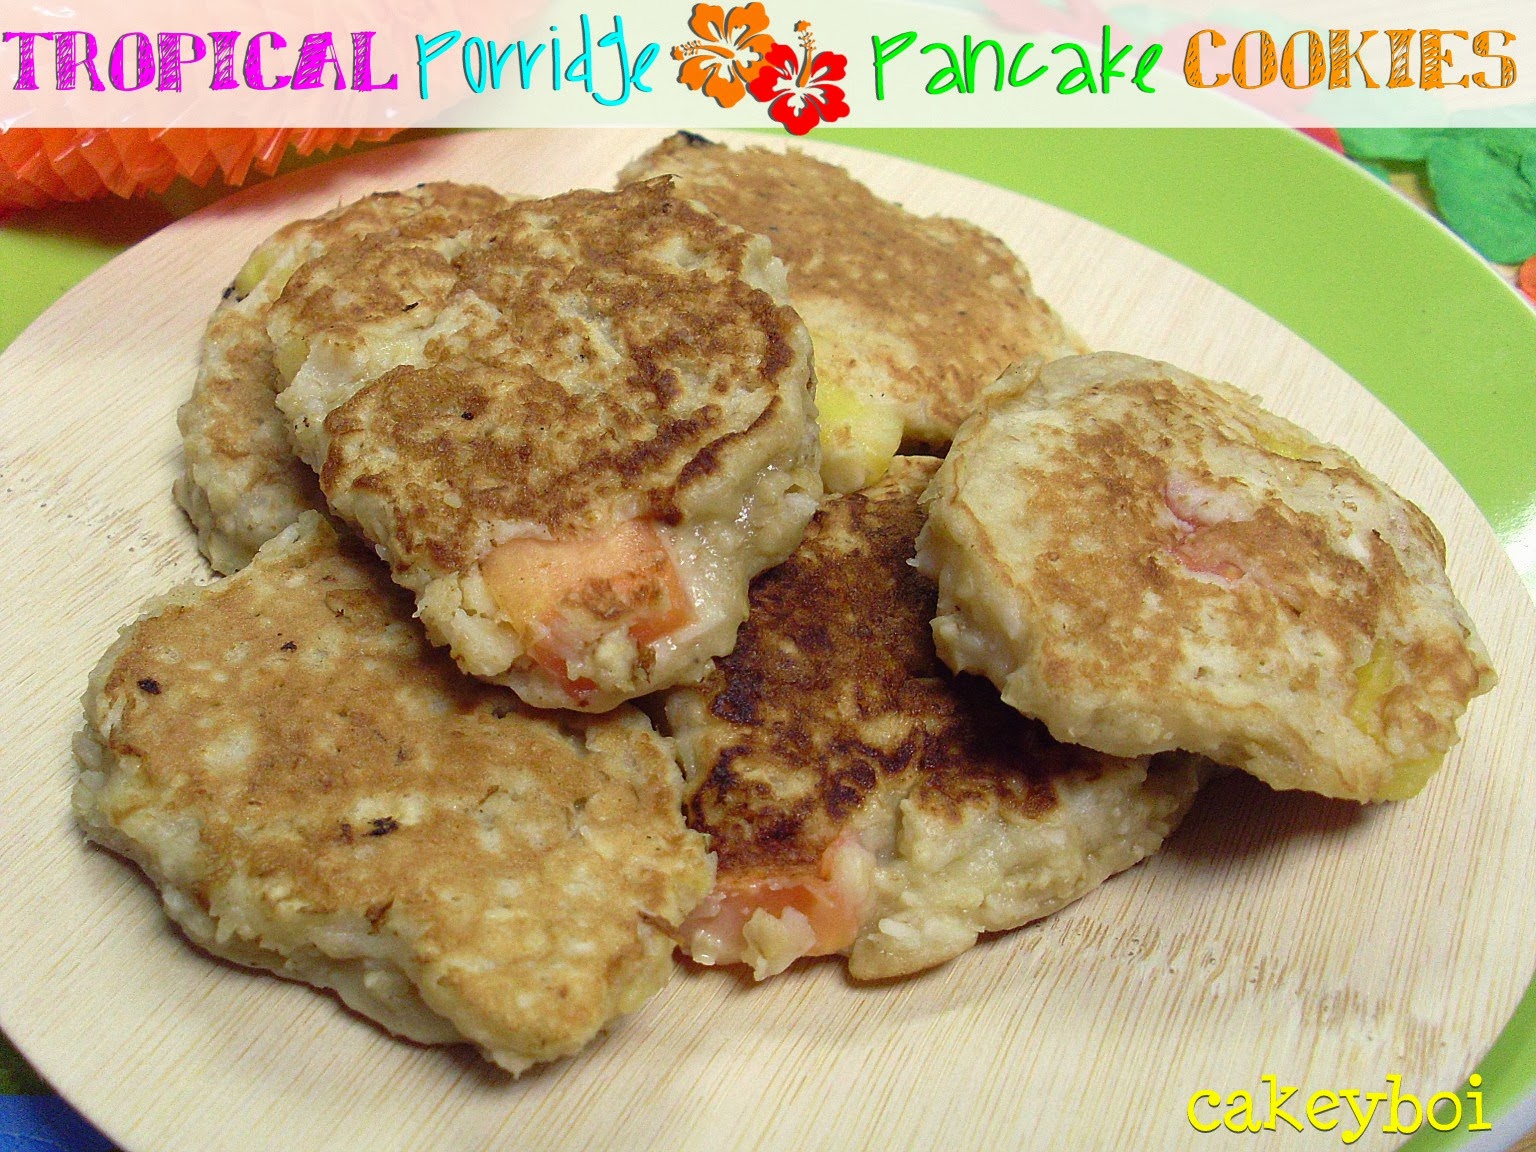 pancake how Porridge food to make 'Cookies' Tropical Pancake syrup network  Cakeyboi: